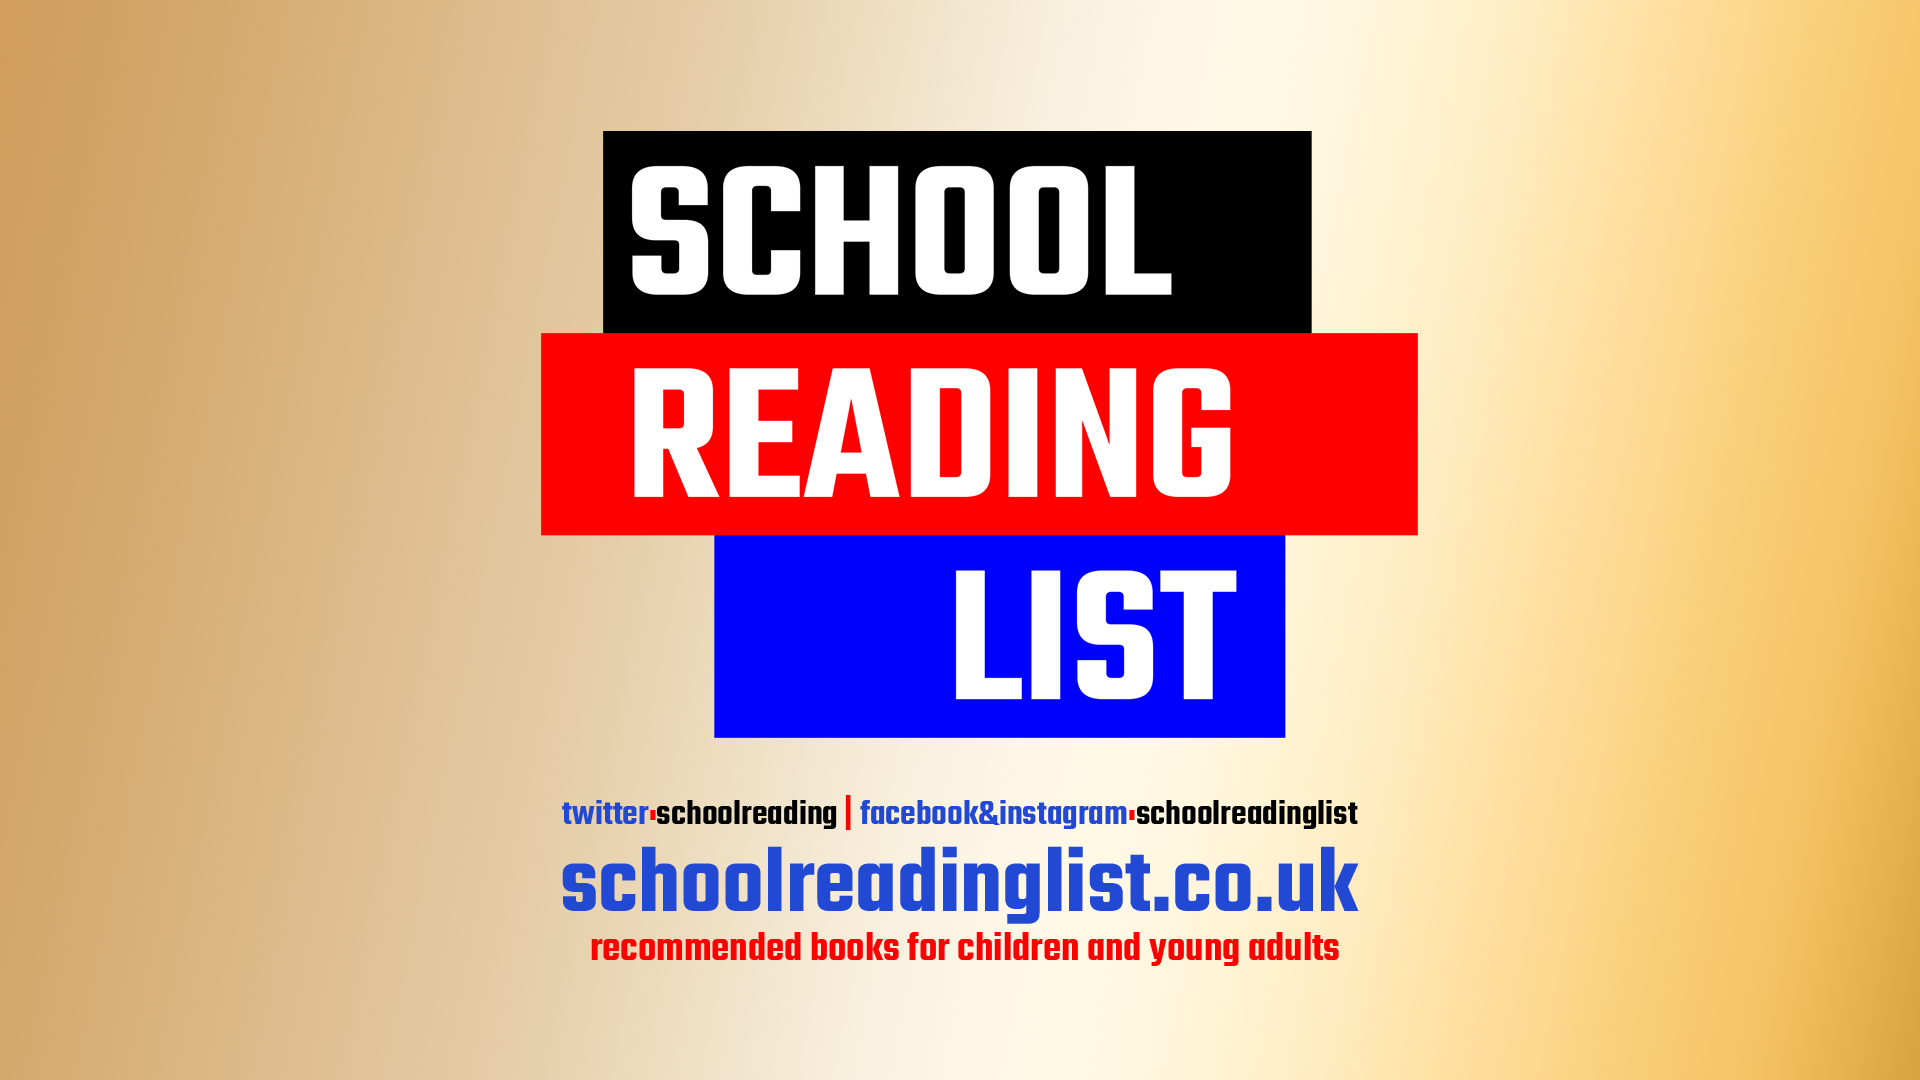 (c) Schoolreadinglist.co.uk